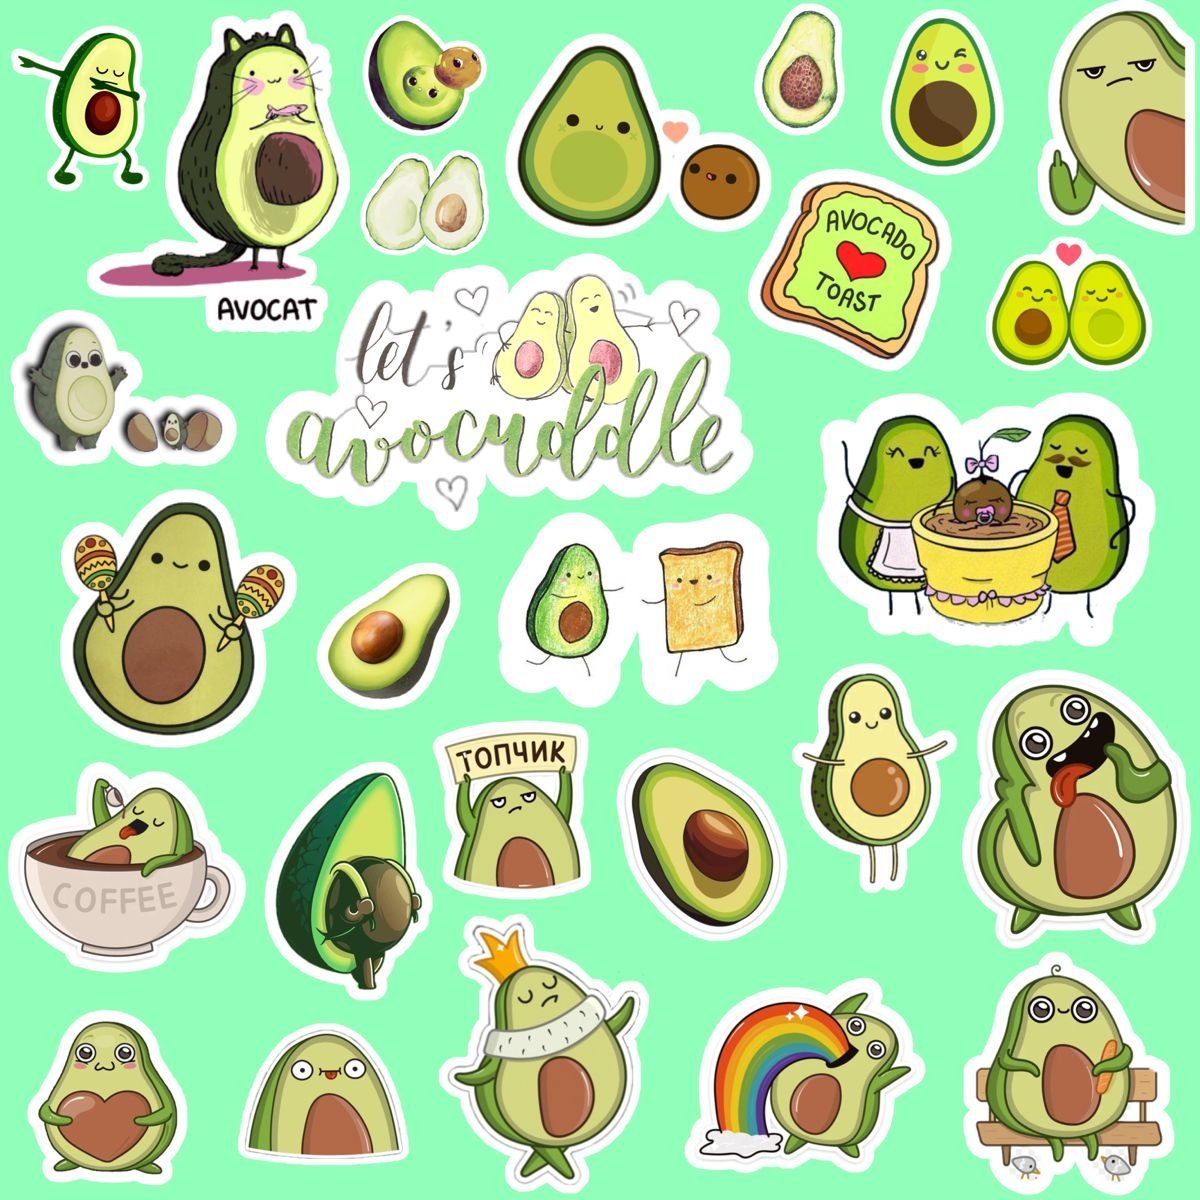 Gorgeous avocado sticker coloring book